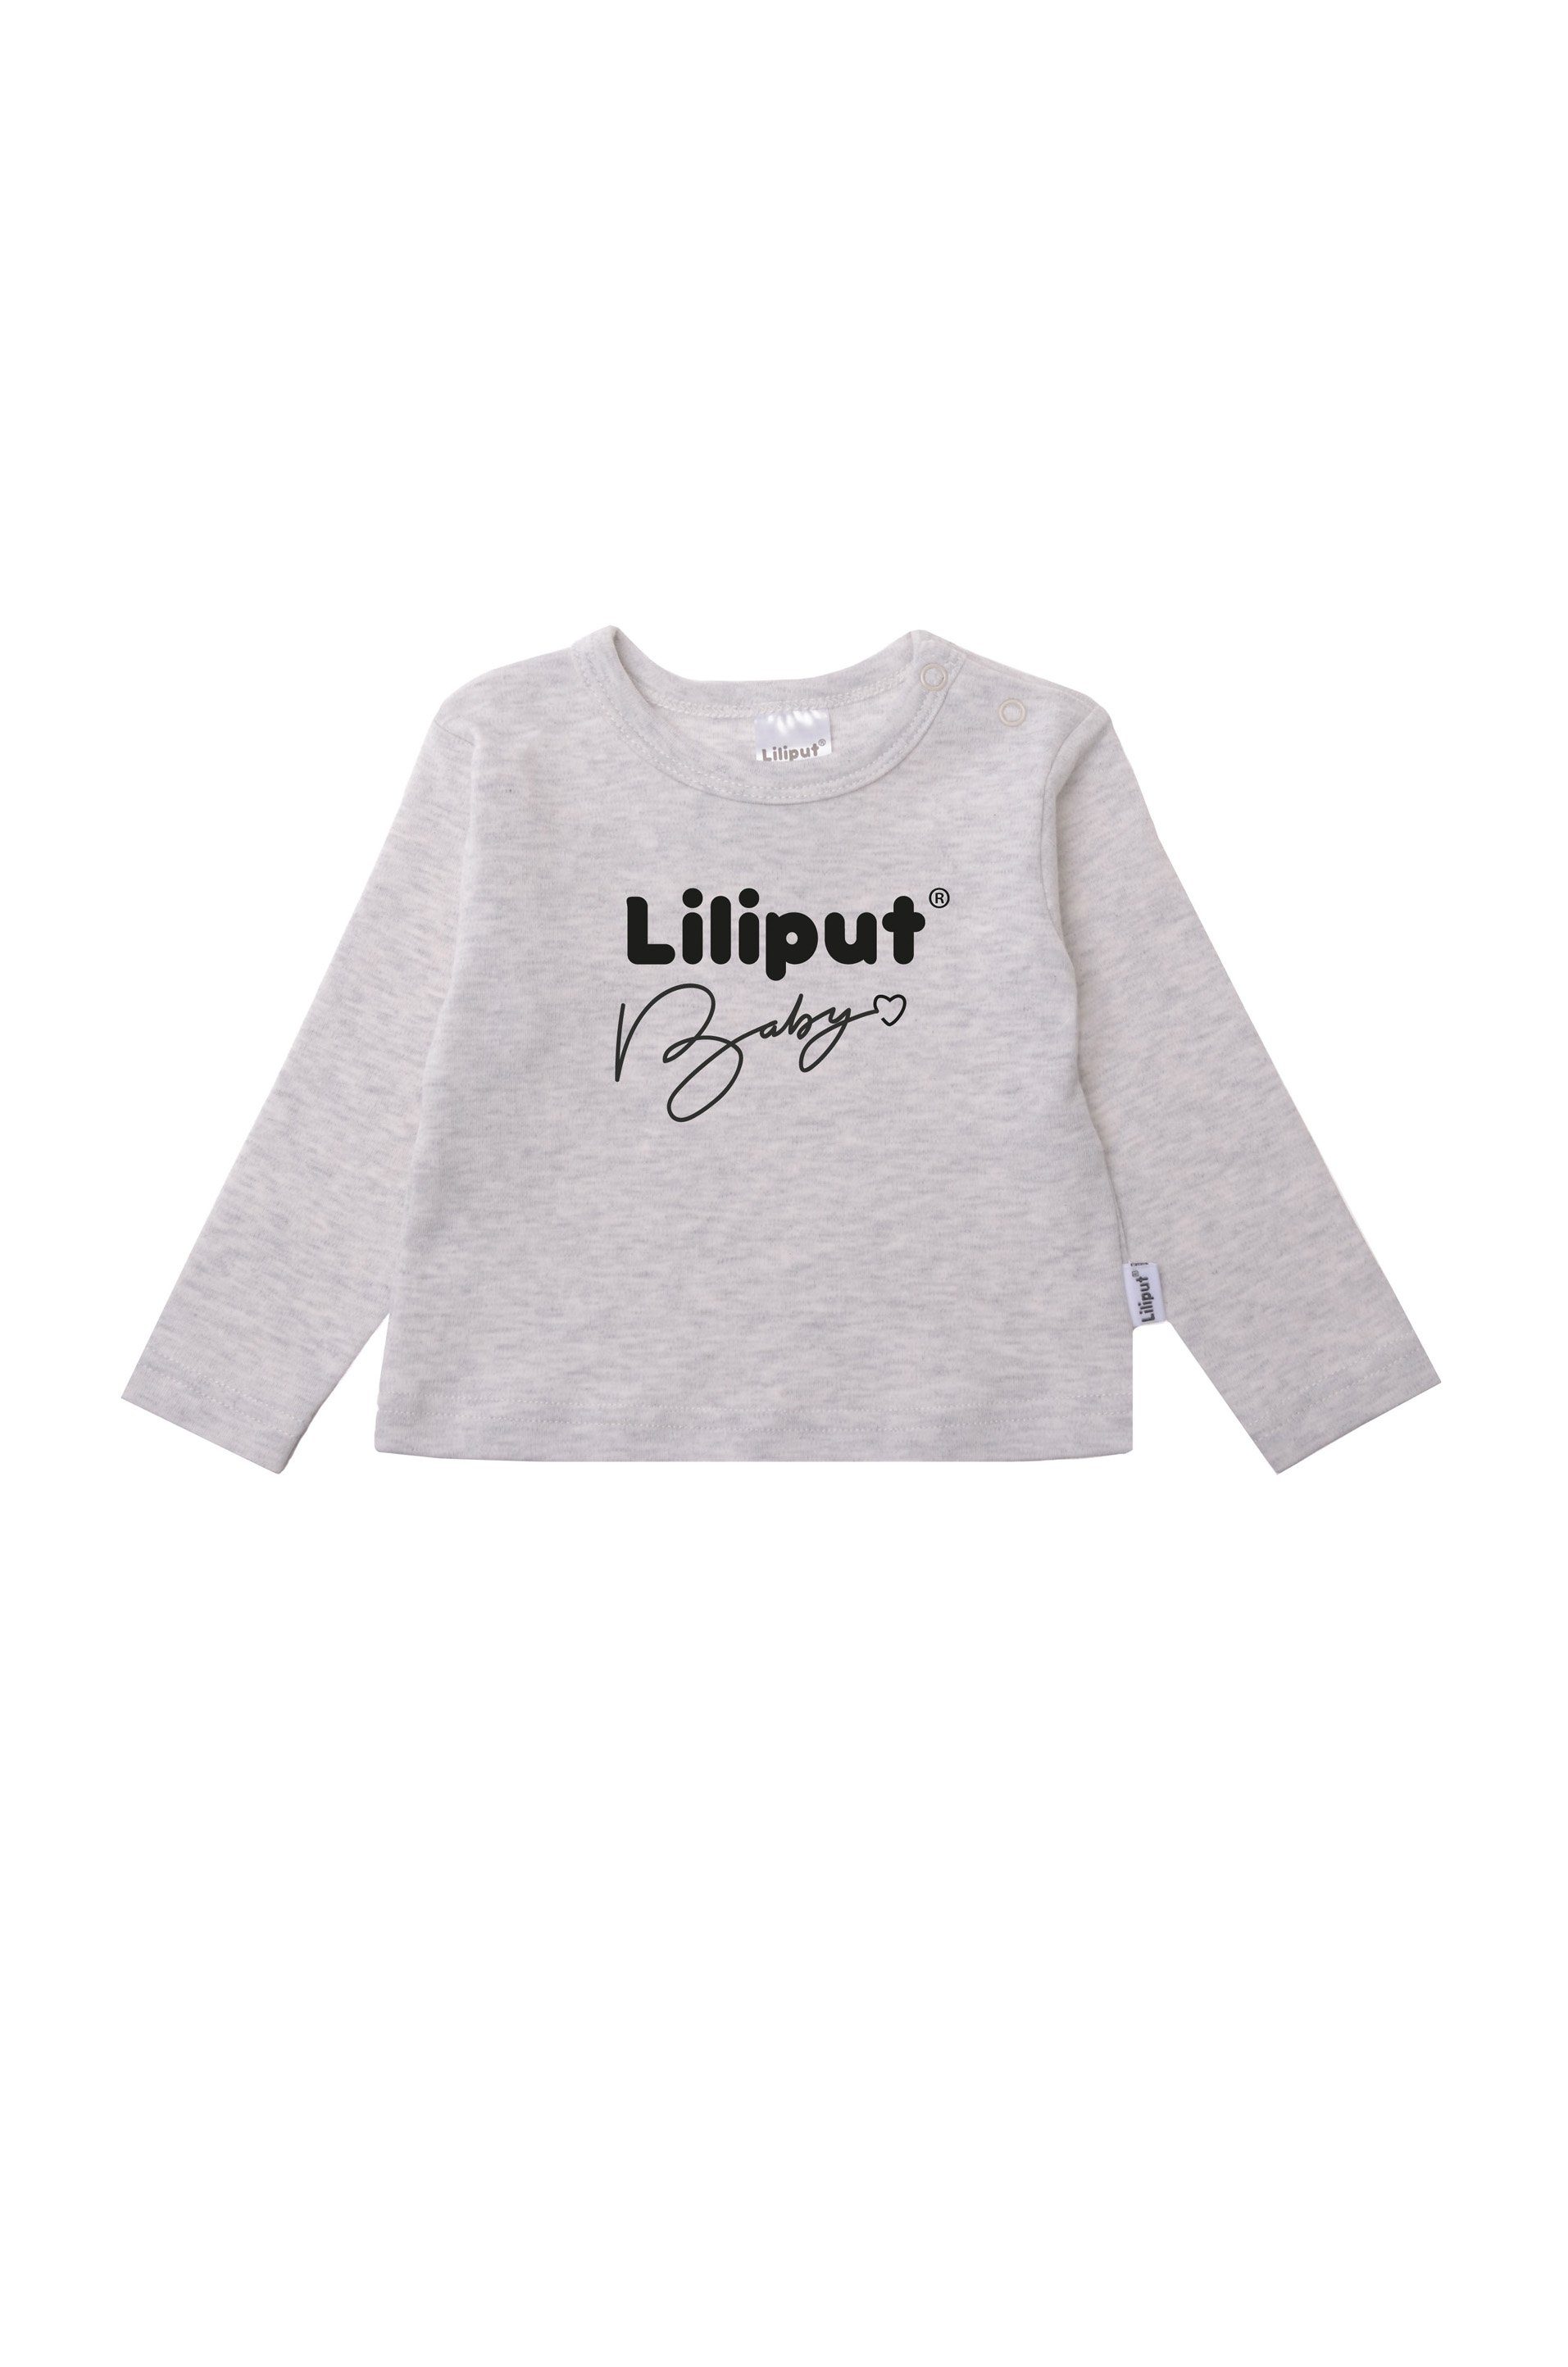 Liliput Langarmshirt mit praktischen Baby Liiput Druckknöpfen